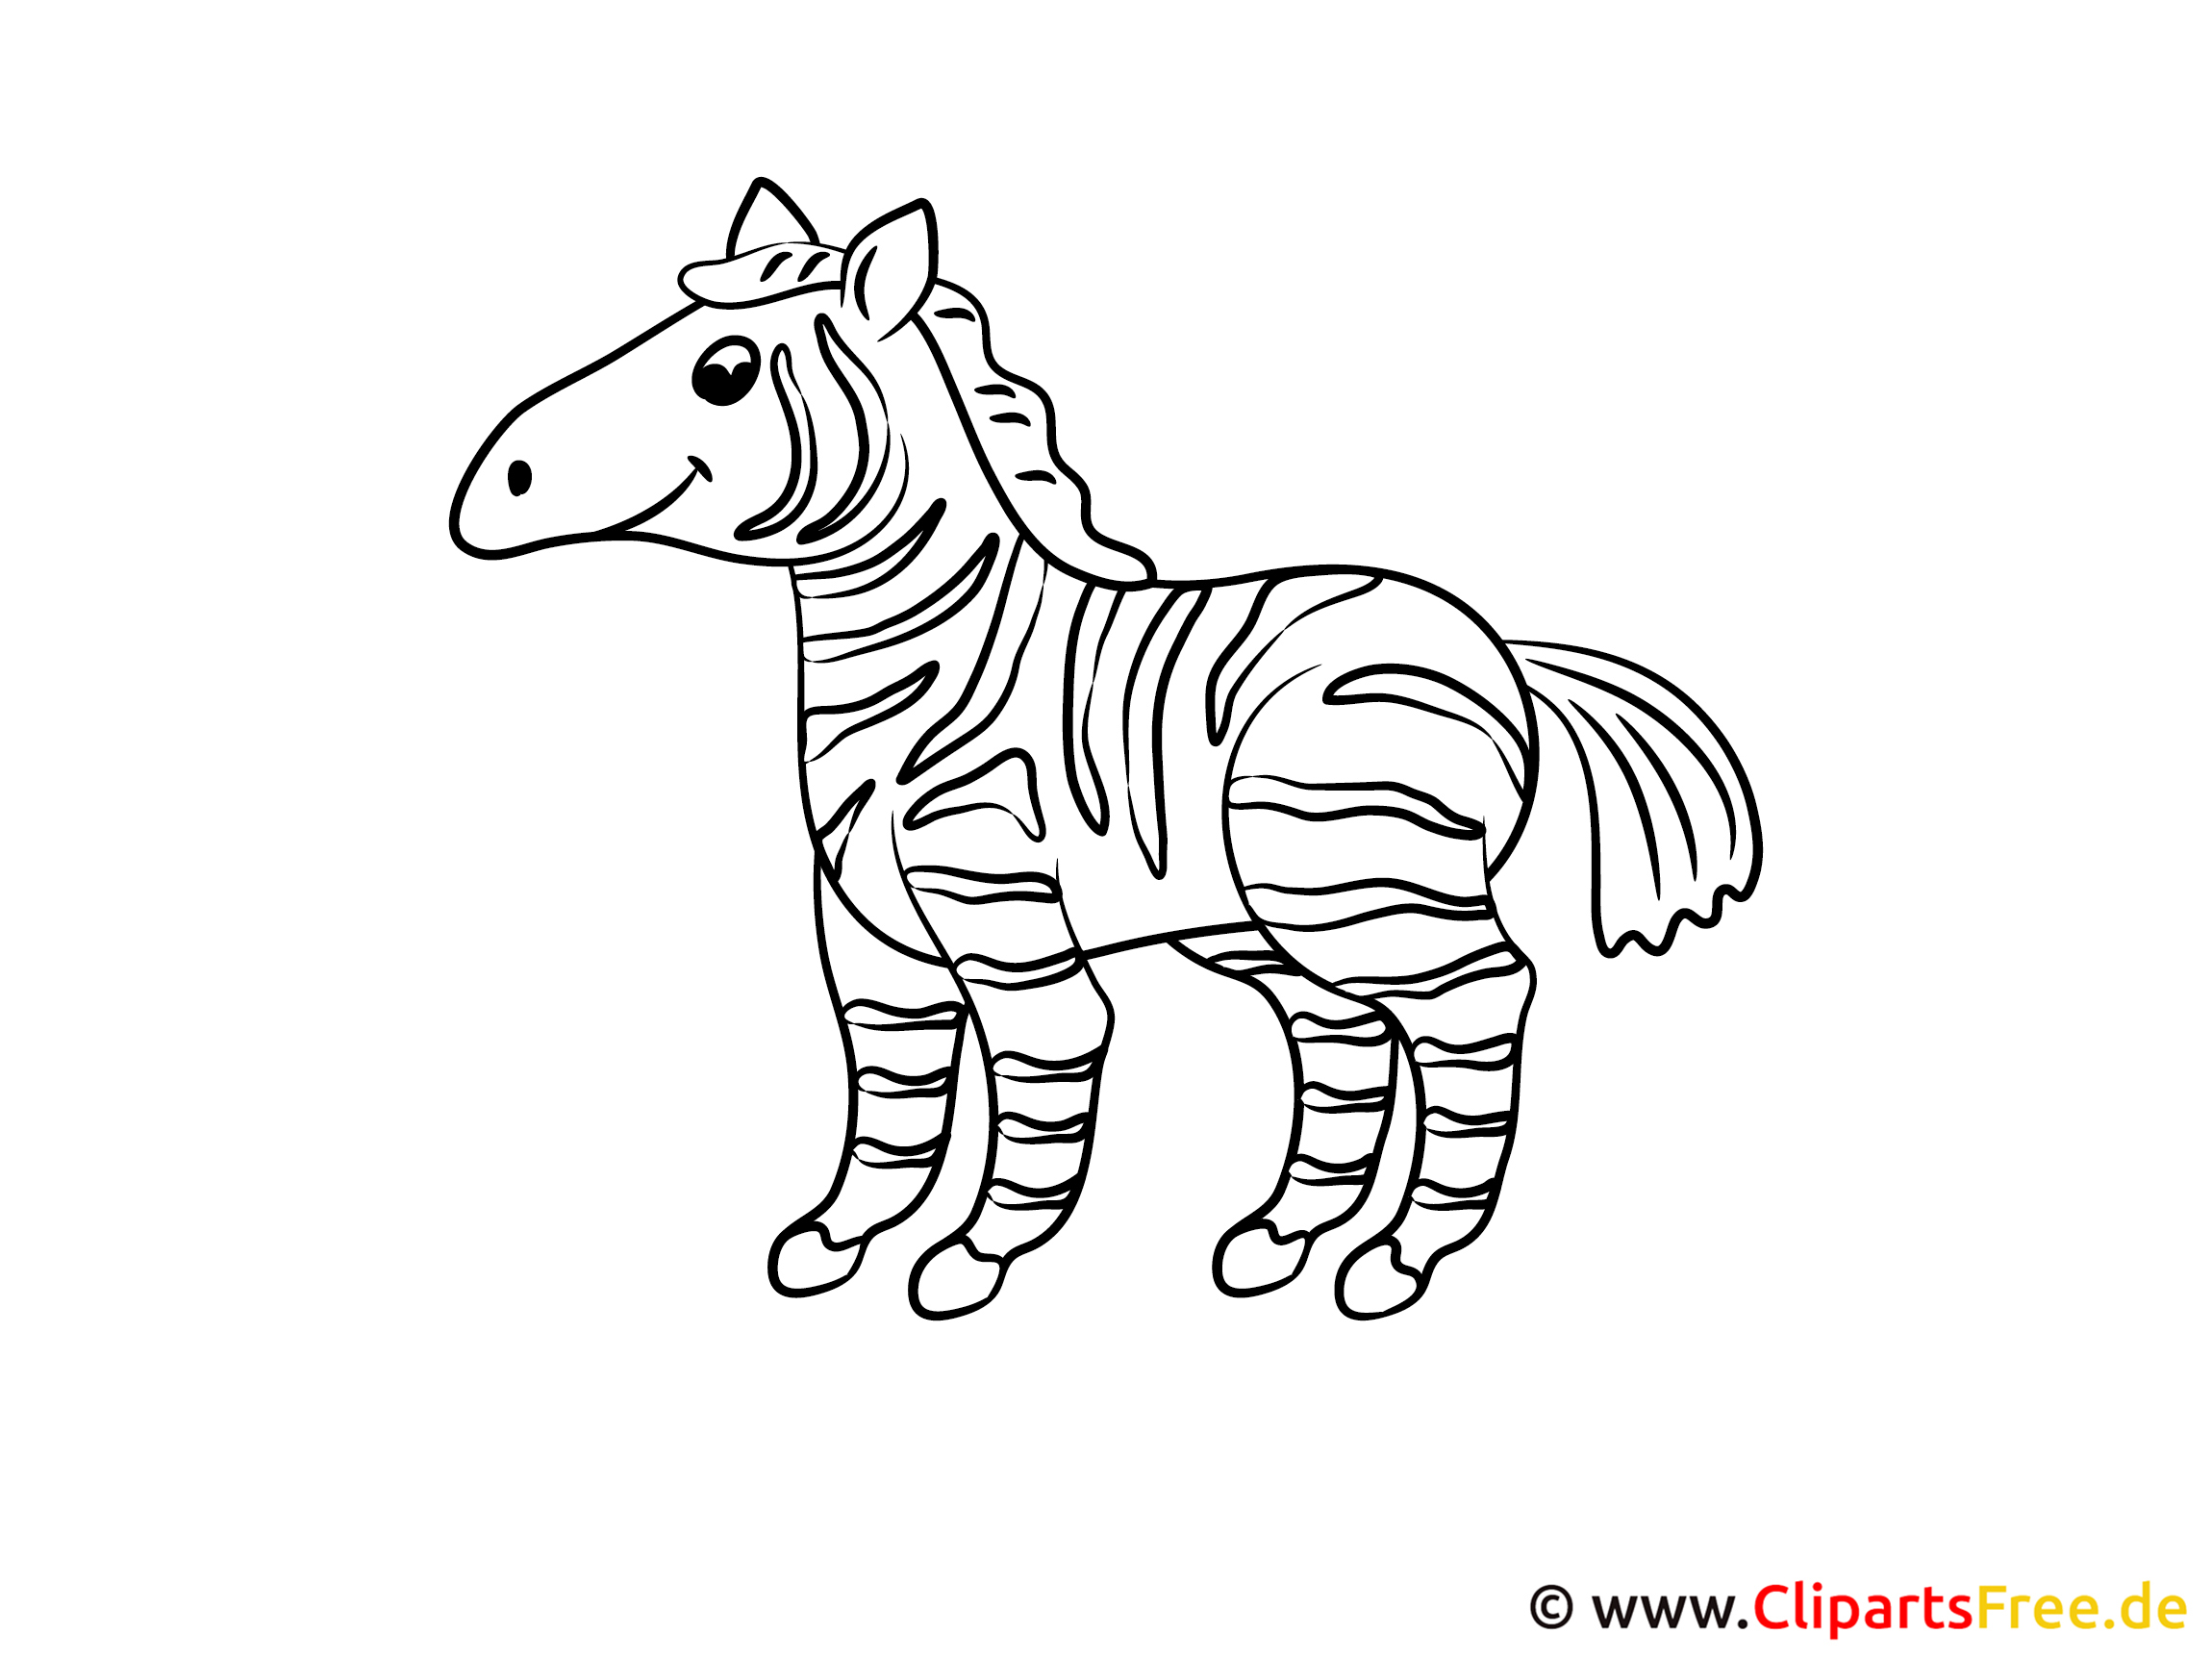 malvorlagen fuer kleinkinder zebra  simple coloring blog